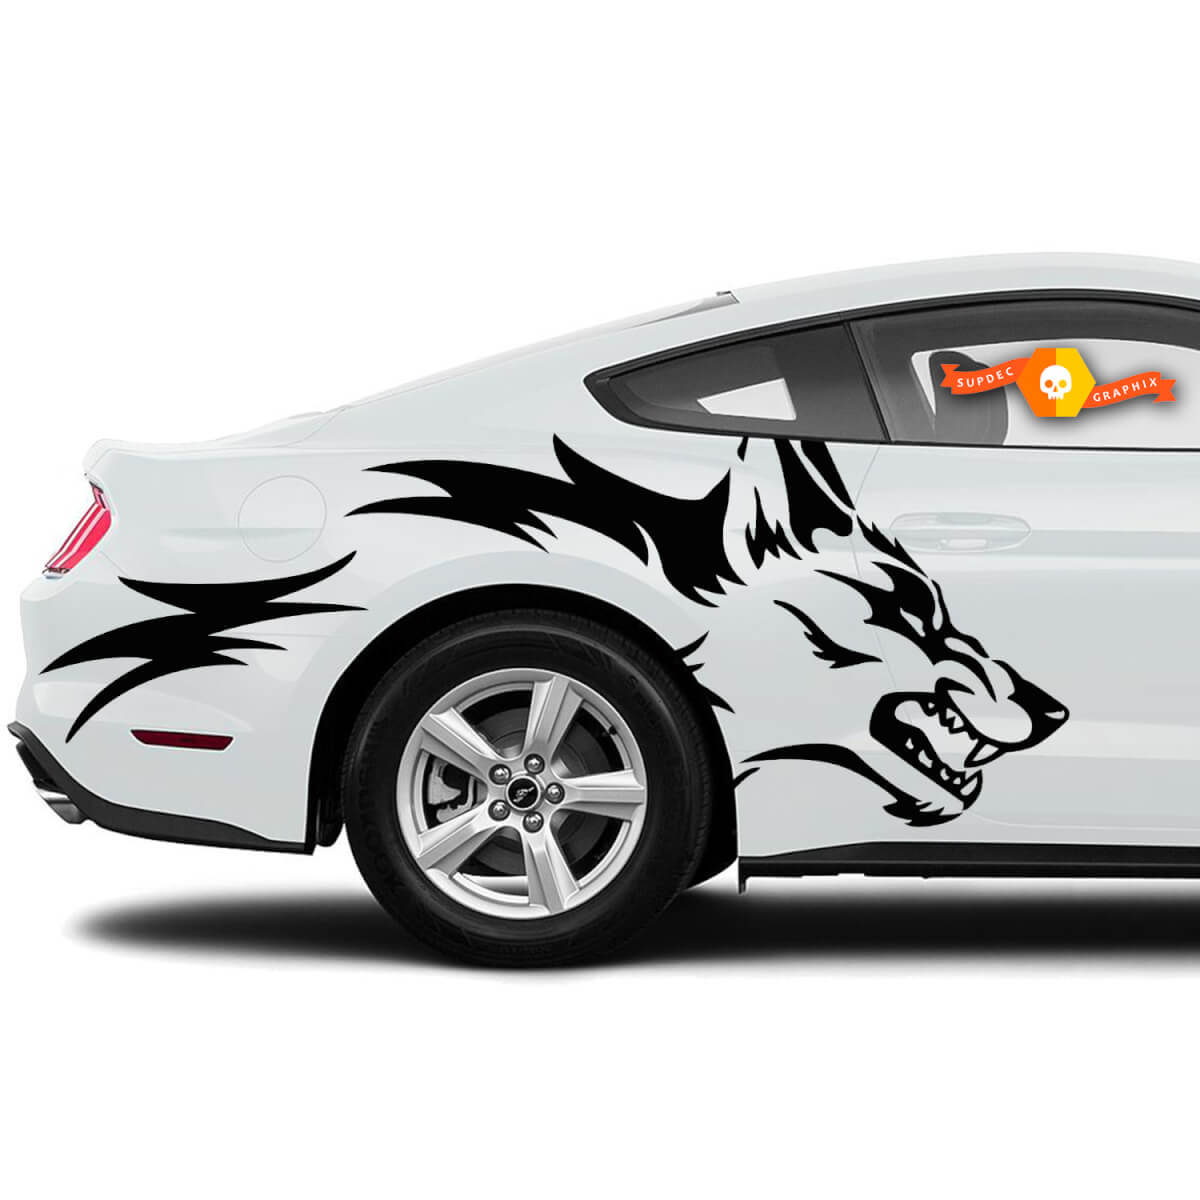 Mustang Ranger Coyote Wolf Grunge Design Stammestür Bett Seite Pickup Fahrzeug LKW Auto Vinyl Grafik Aufkleber Aufkleber